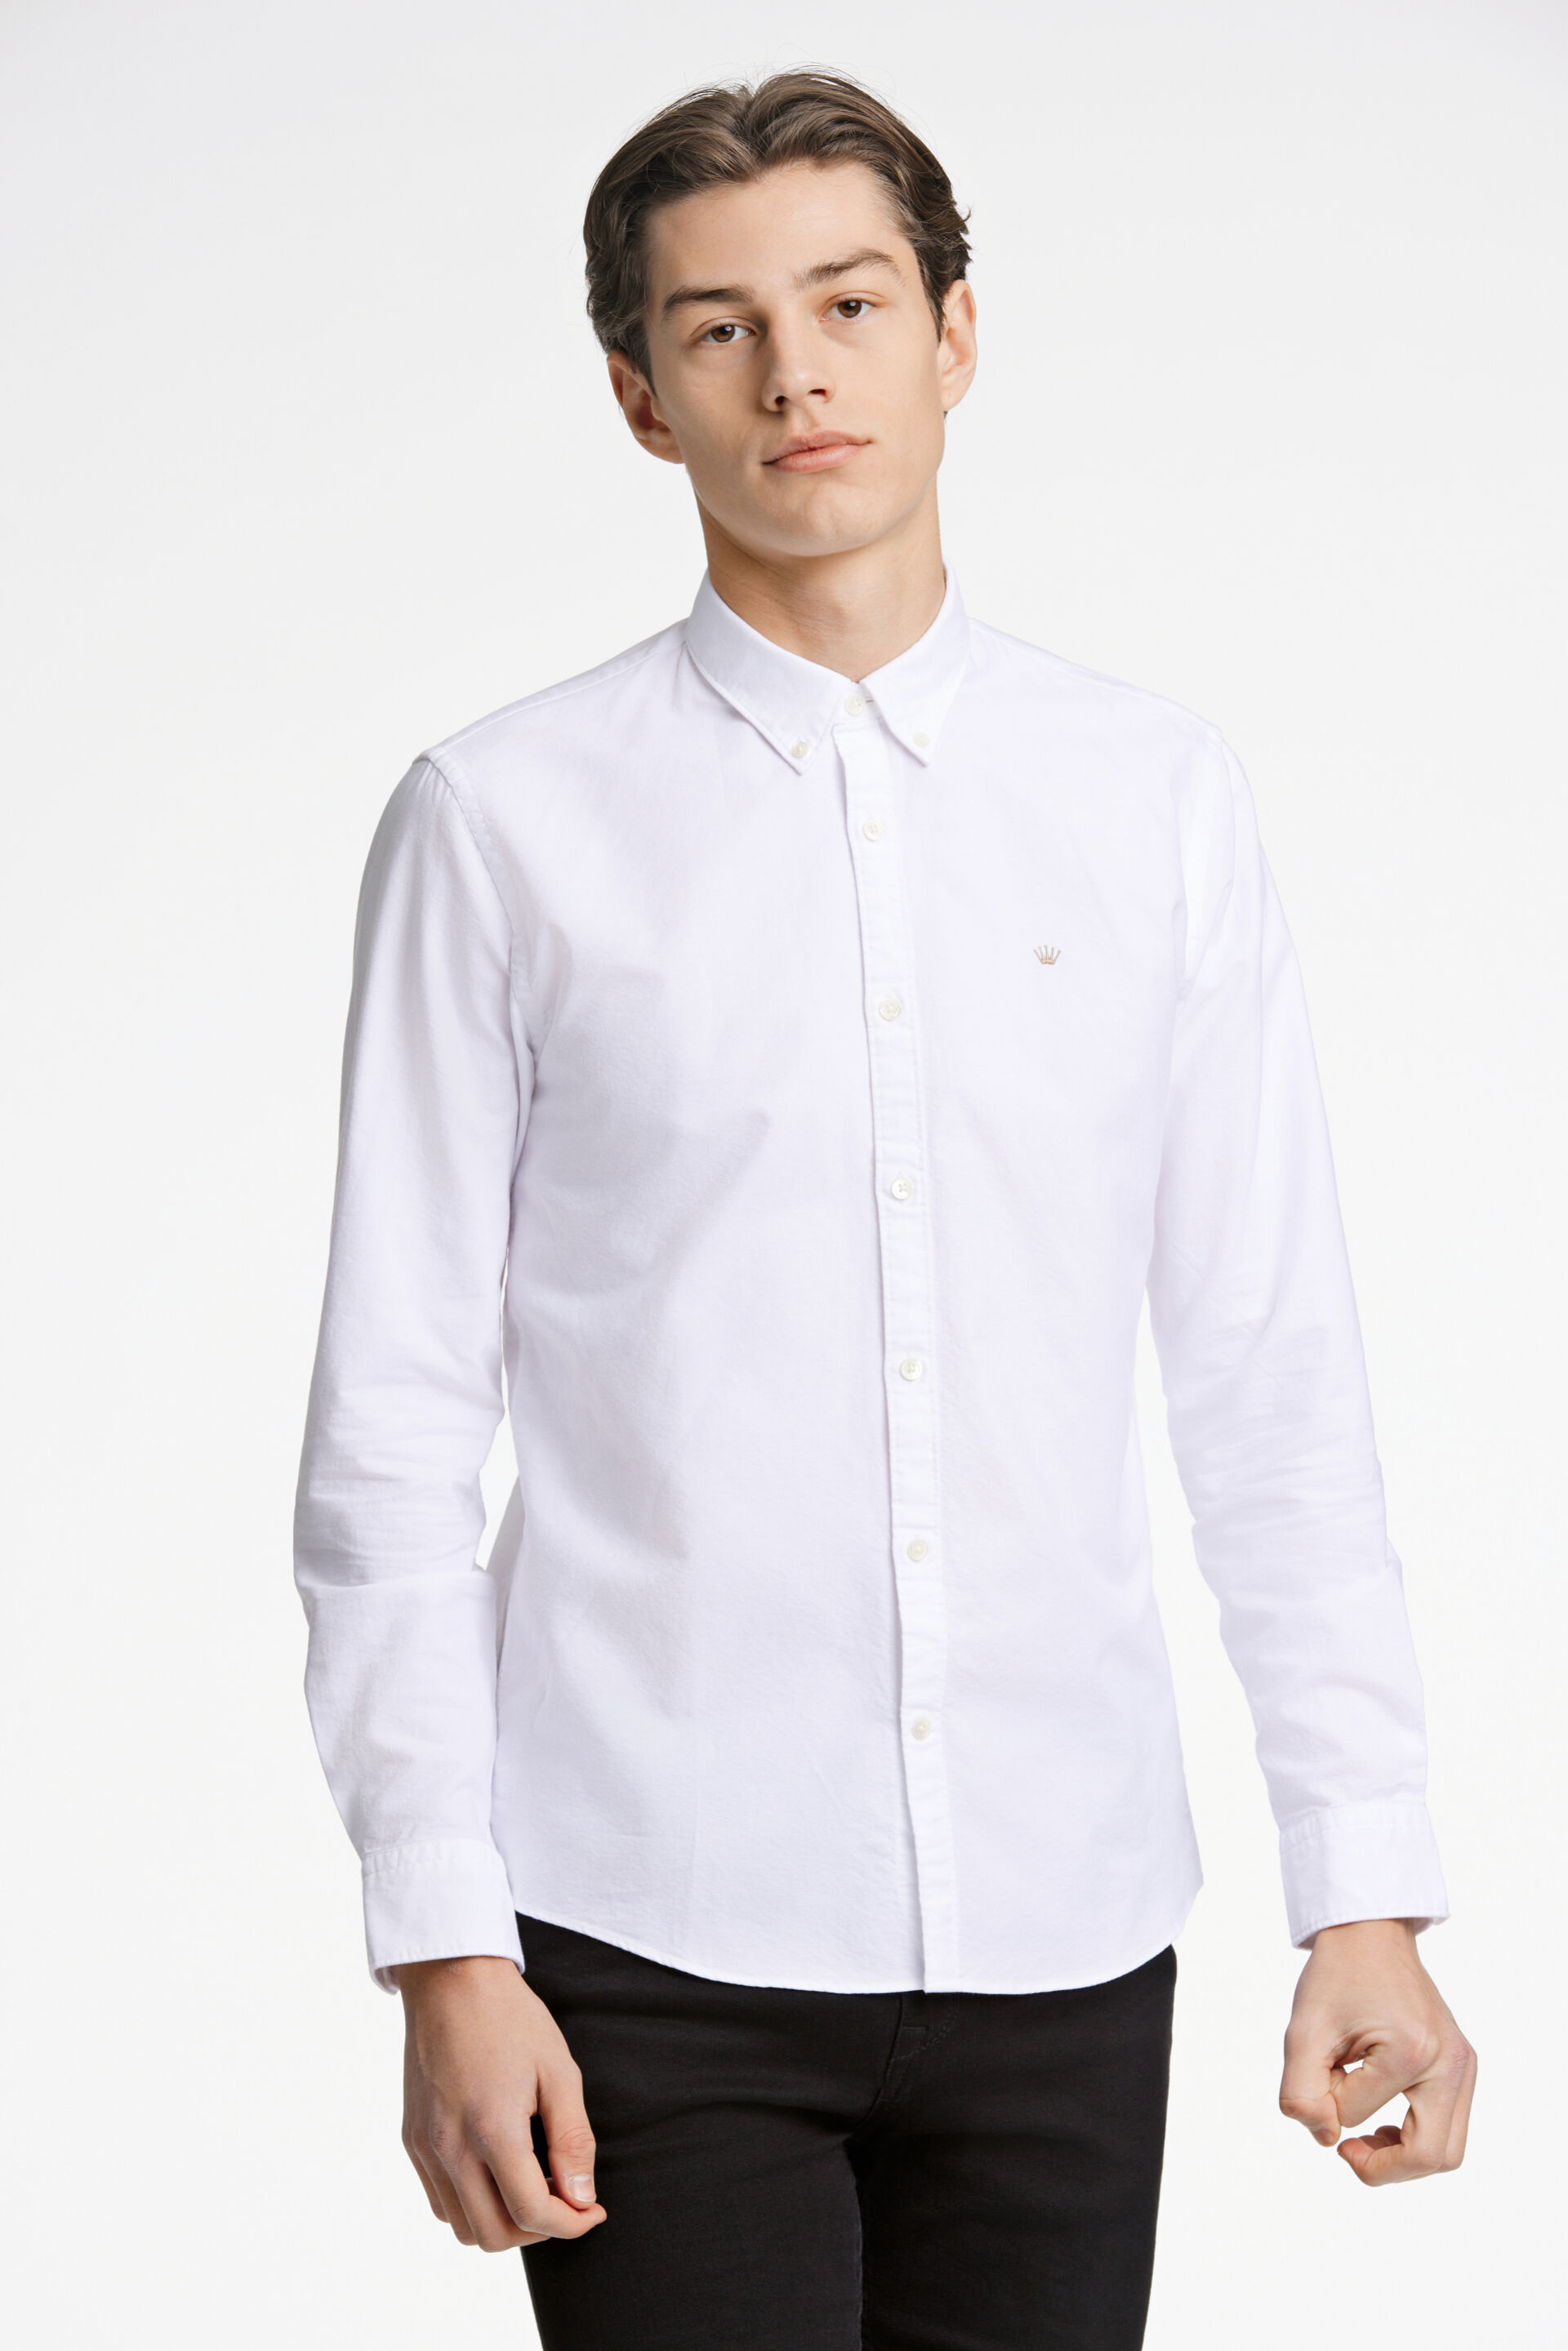 Junk de Luxe  Oxford skjorte Hvid 60-205020